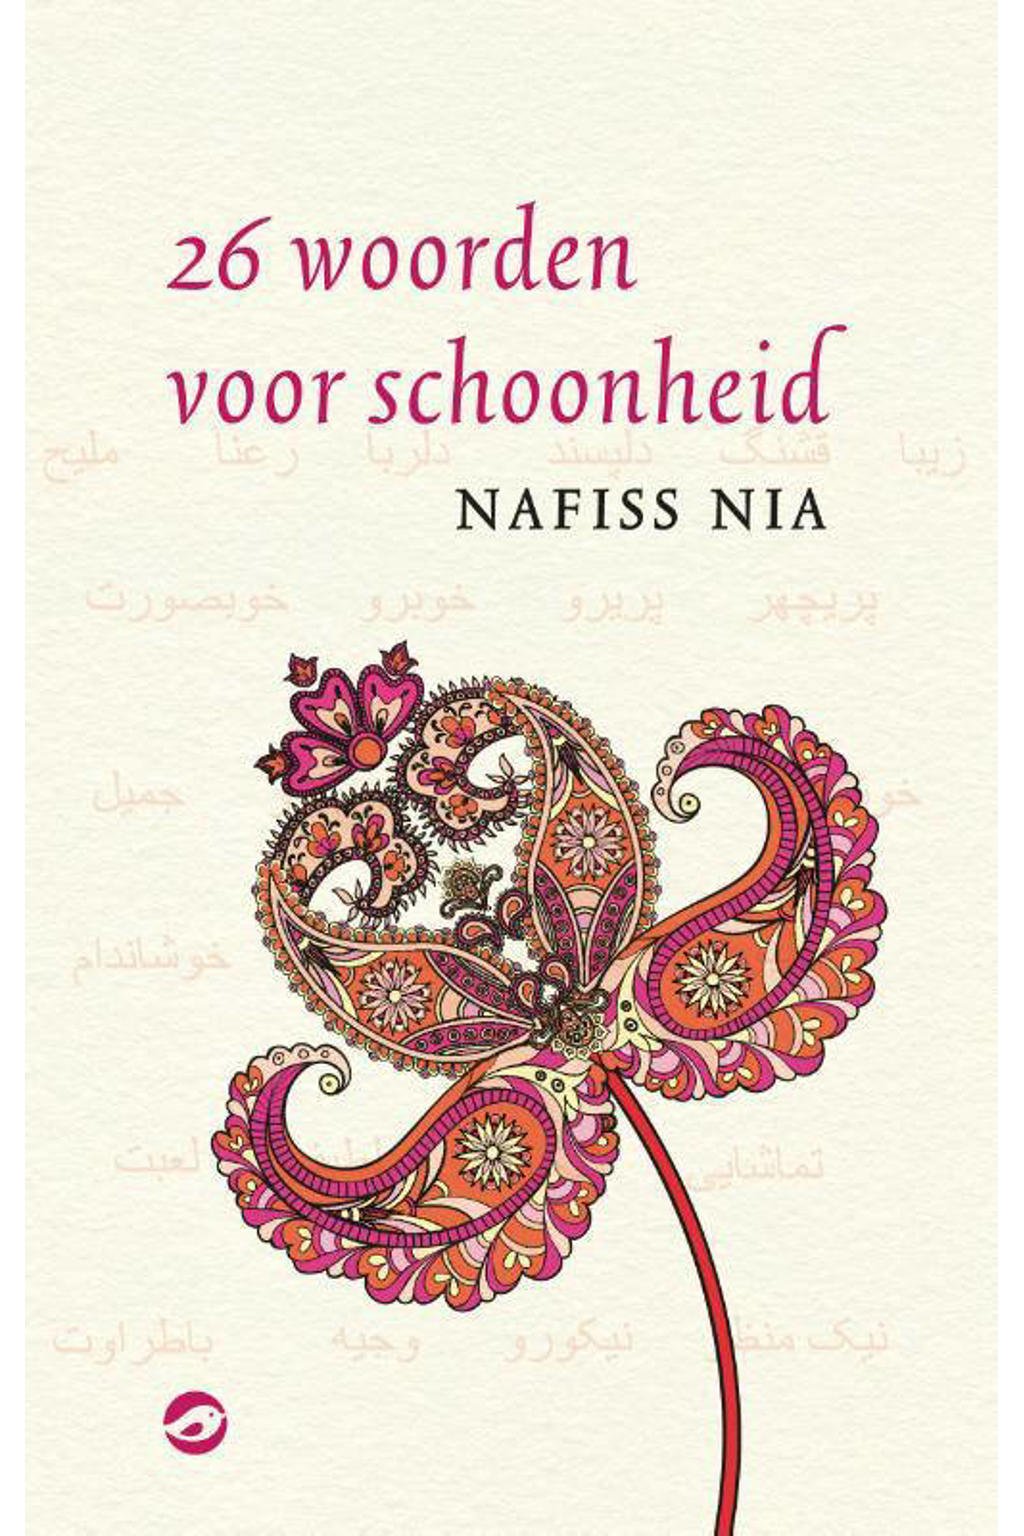 26 woorden voor schoonheid - Nafiss Nia